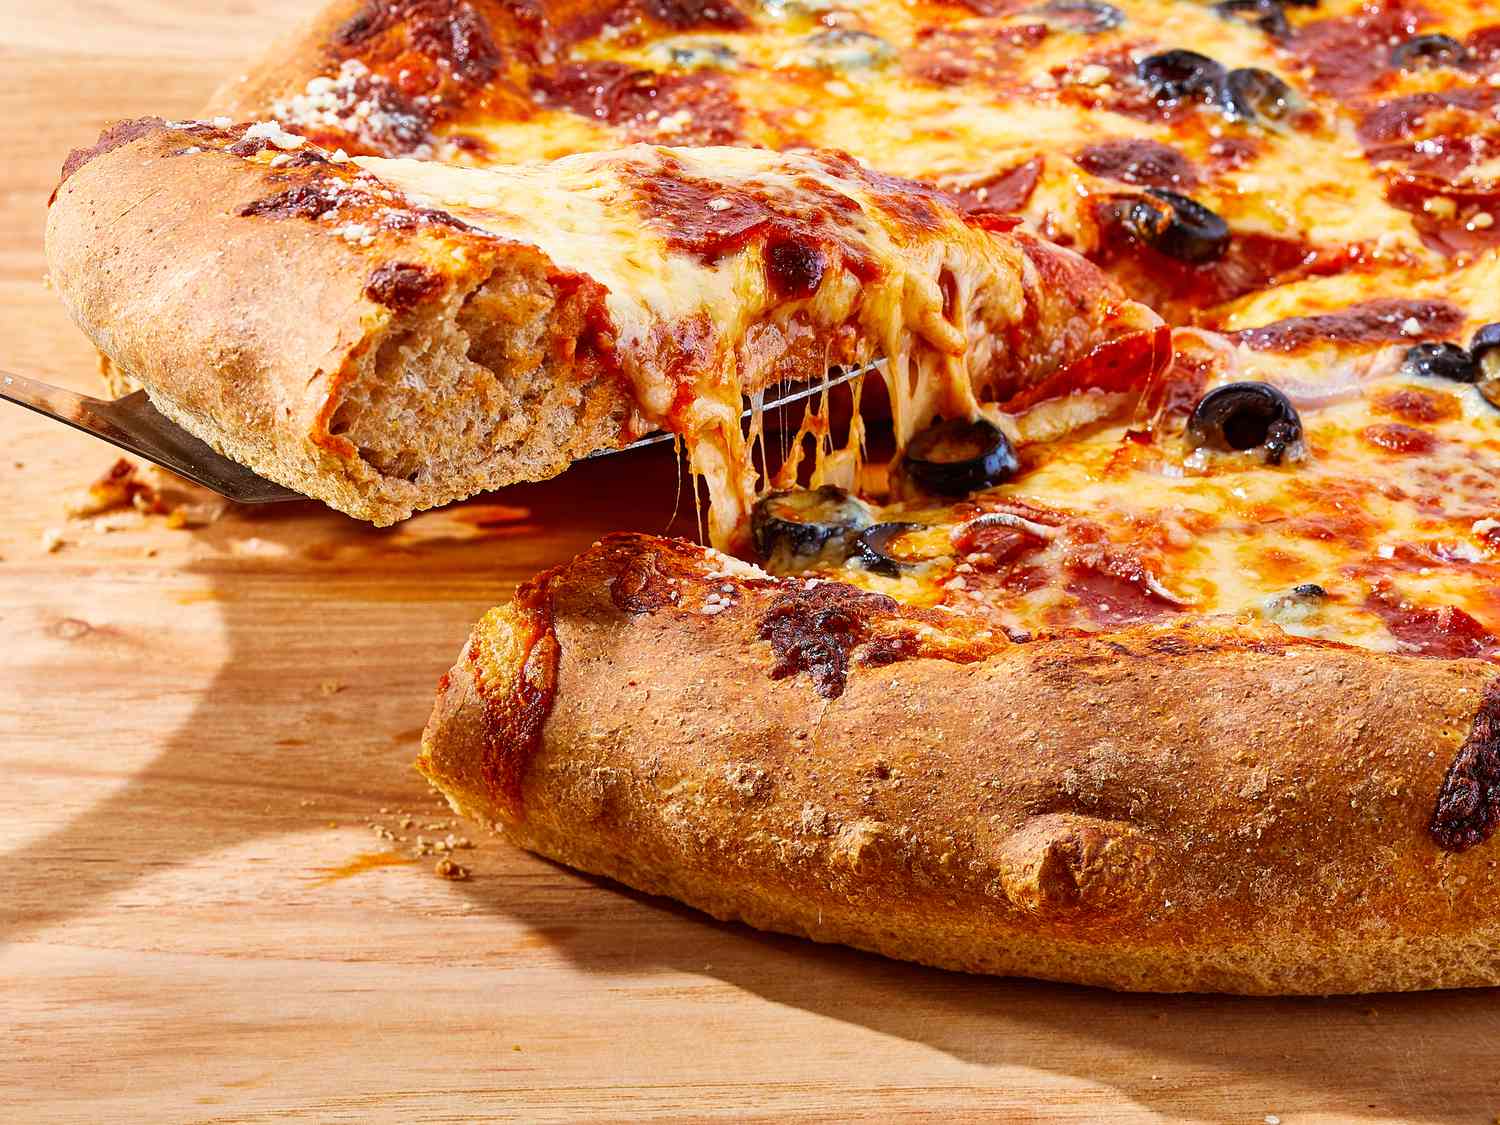 Lớp vỏ pizza lúa mì nguyên chất tuyệt vời